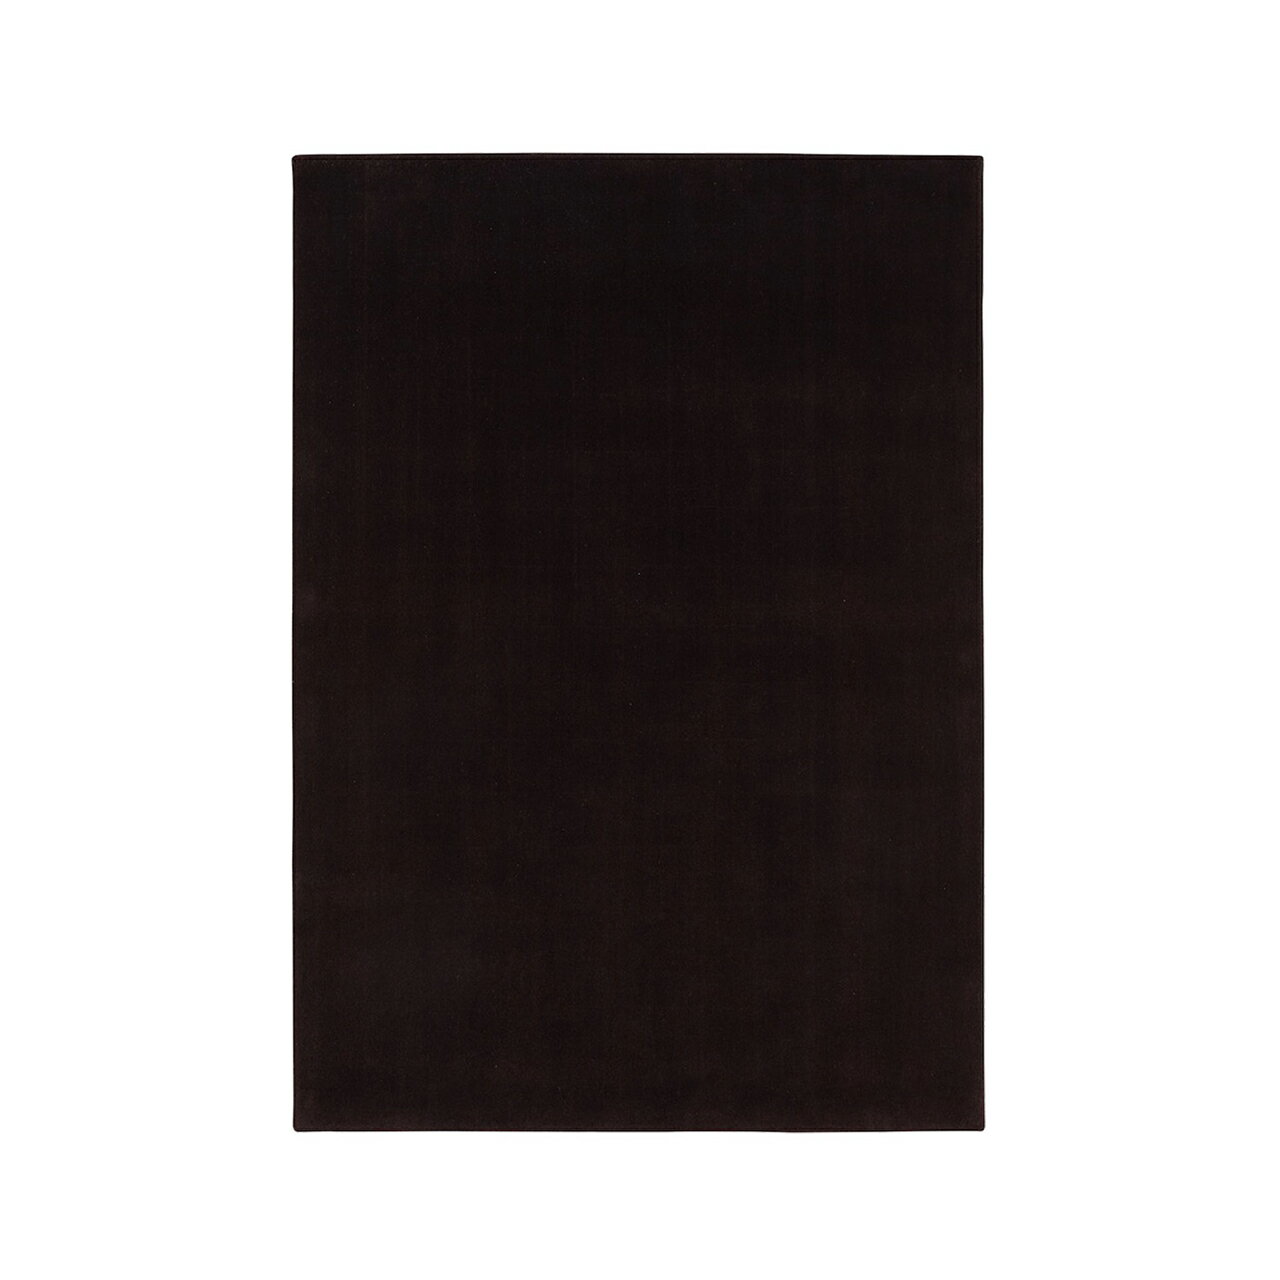 [山形緞通 プレミアム無地]『MANYO』YORU [選べるS/Mサイズ] オリエンタルカーペット 絨毯 じゅうたん 高級 高品質 インテリア ラグ マット 敷物 F21A-161var